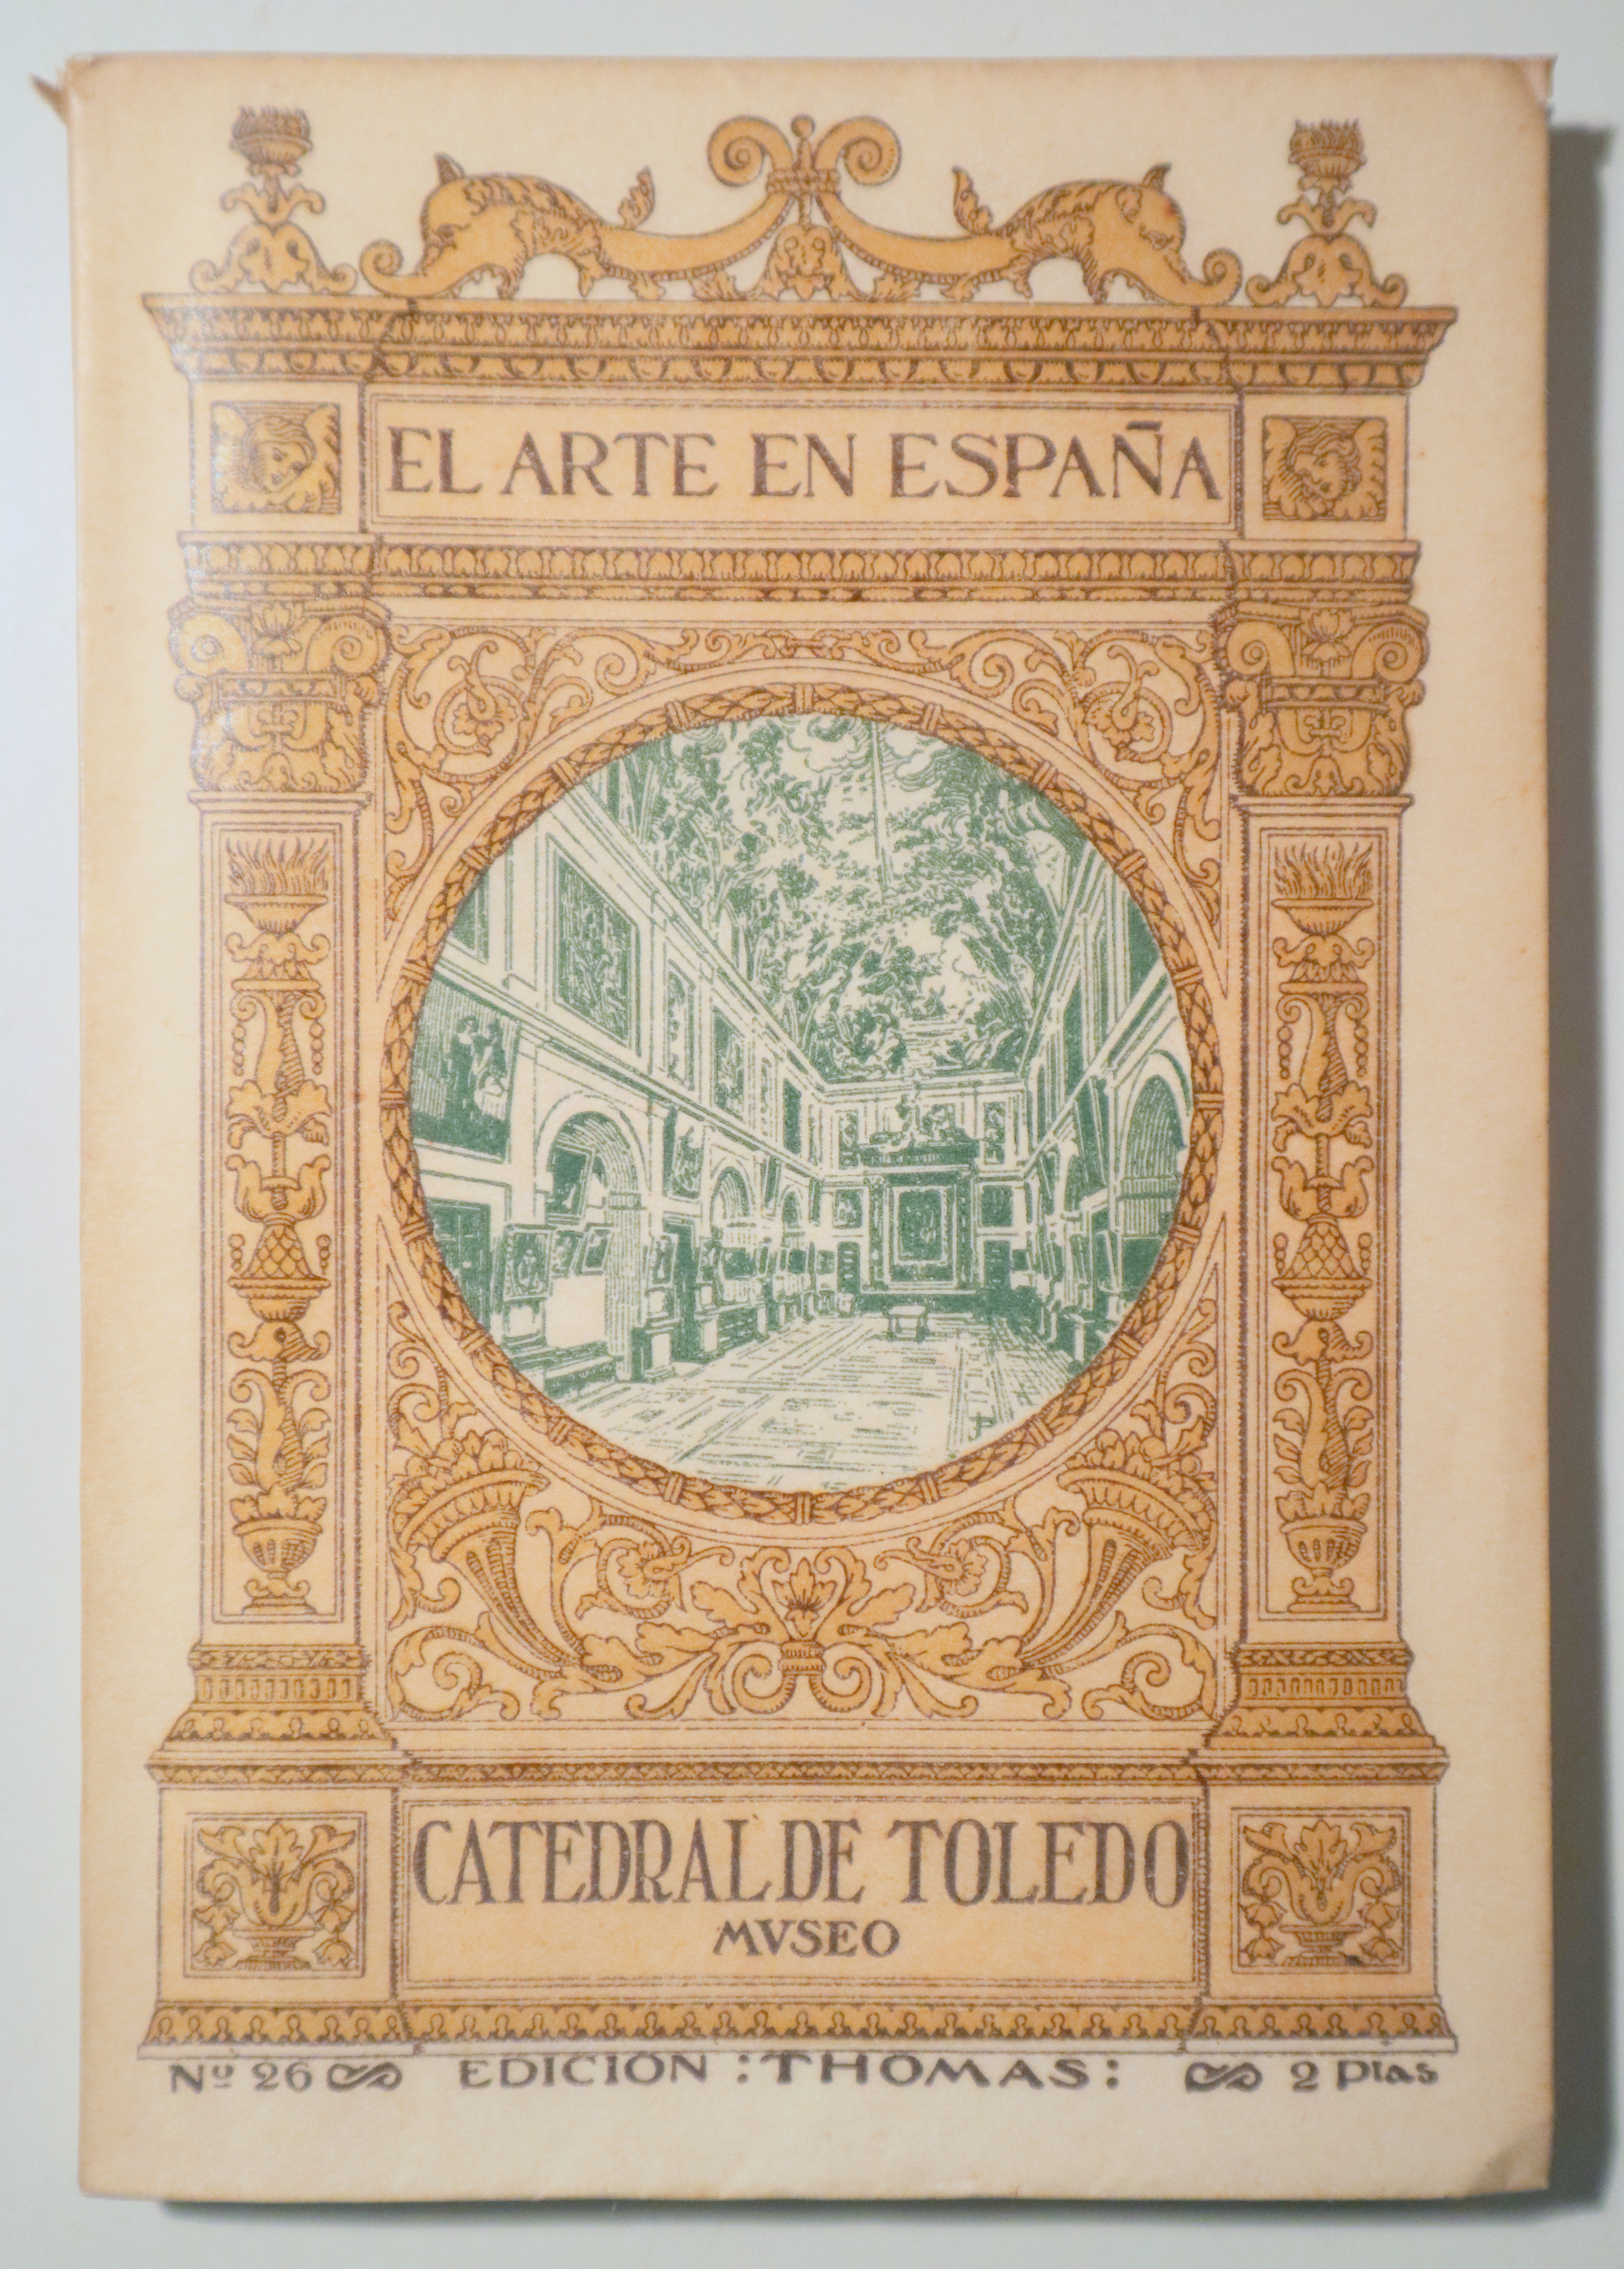 EL ARTE EN ESPAÑA nº 26. Catedral de Toledo. Museo - Barcelona s/f - Muy ilustrado